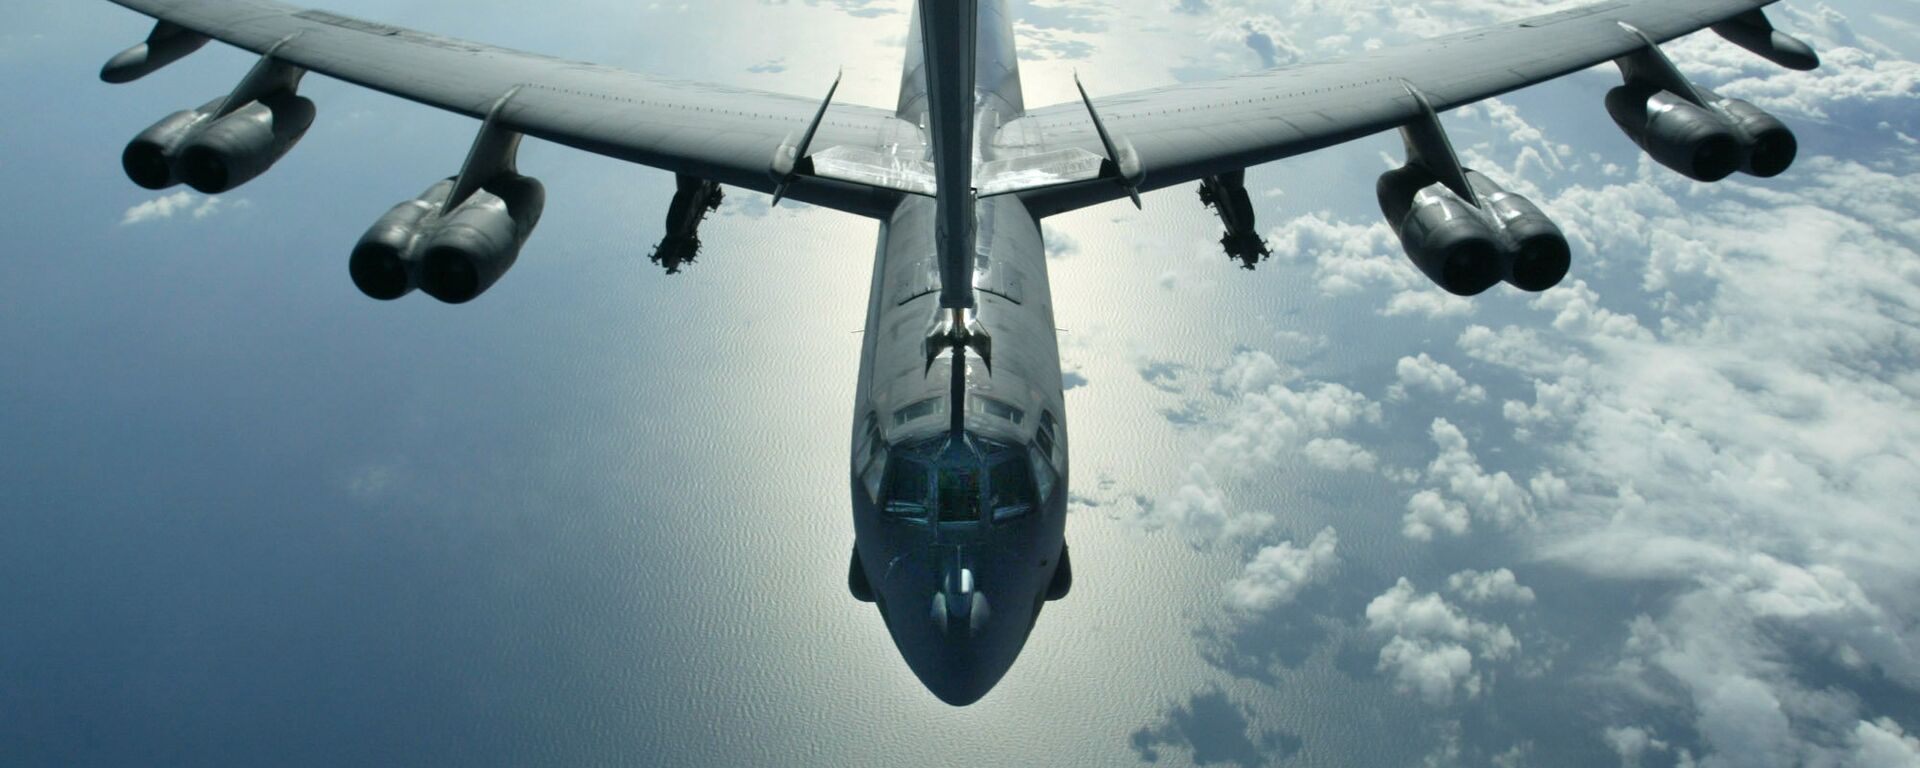 Máy bay ném bom chiến lược B-52 của Mỹ - Sputnik Việt Nam, 1920, 06.09.2019